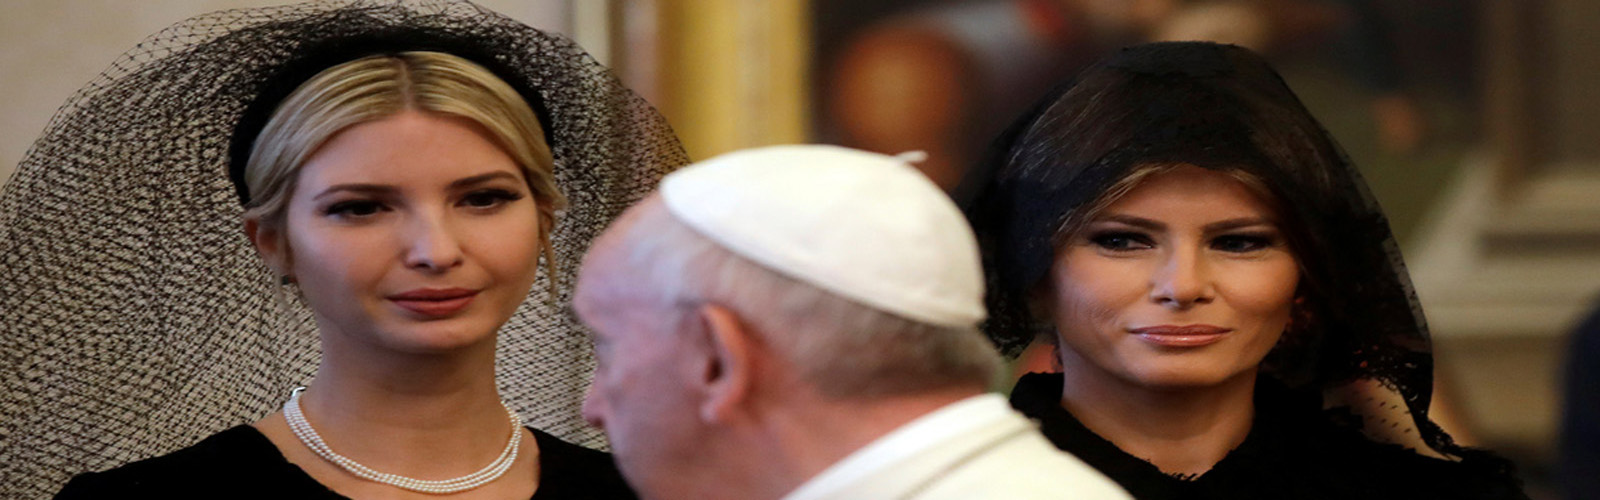 Unlike in Saudi Arabia, Melania and Ivanka covered their heads at Vatican